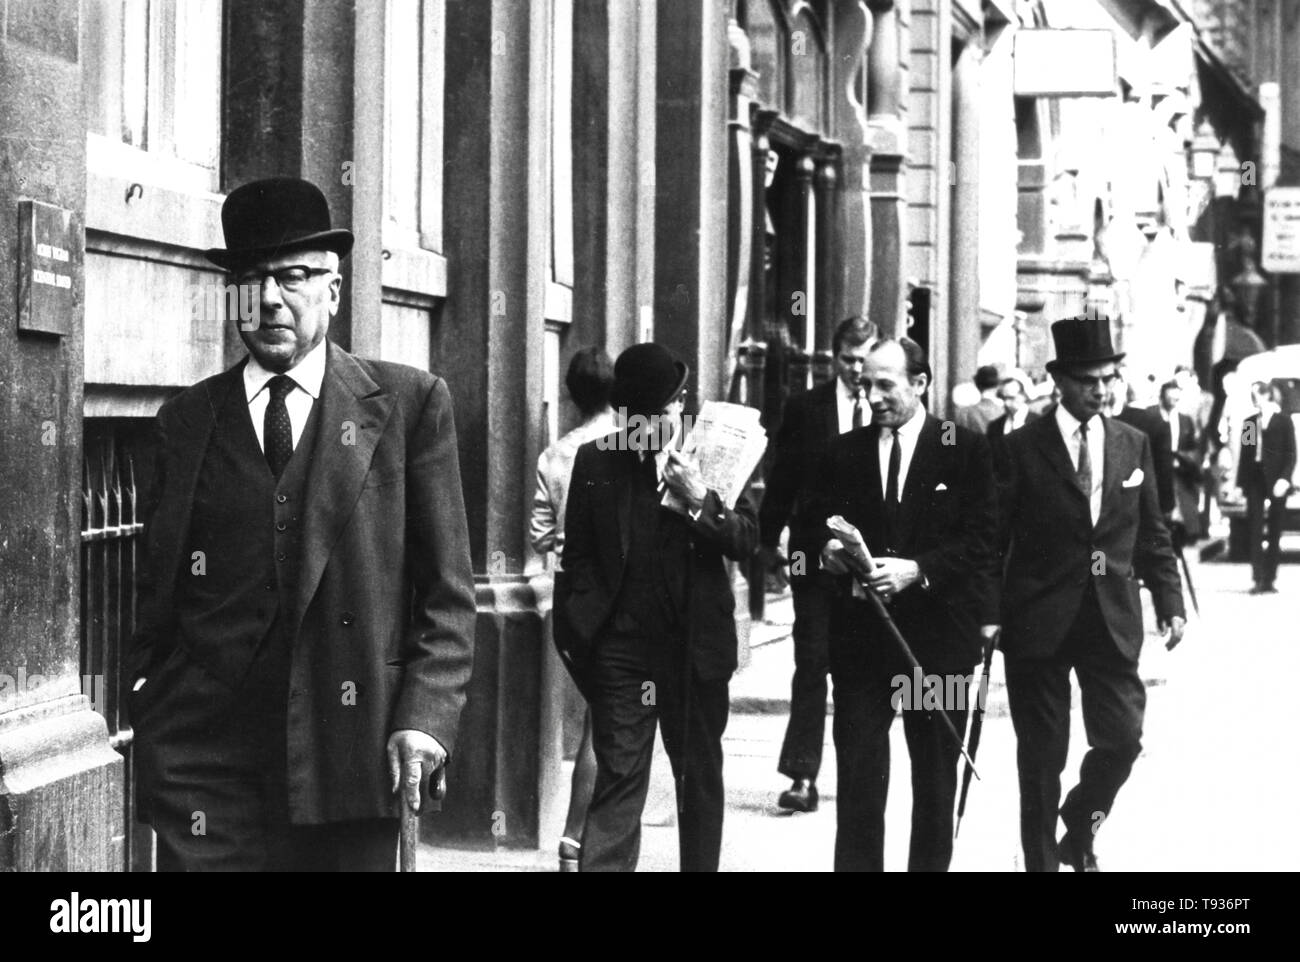 Des hommes d'affaires de la ville, Londres, Royaume-Uni, 1970 Banque D'Images